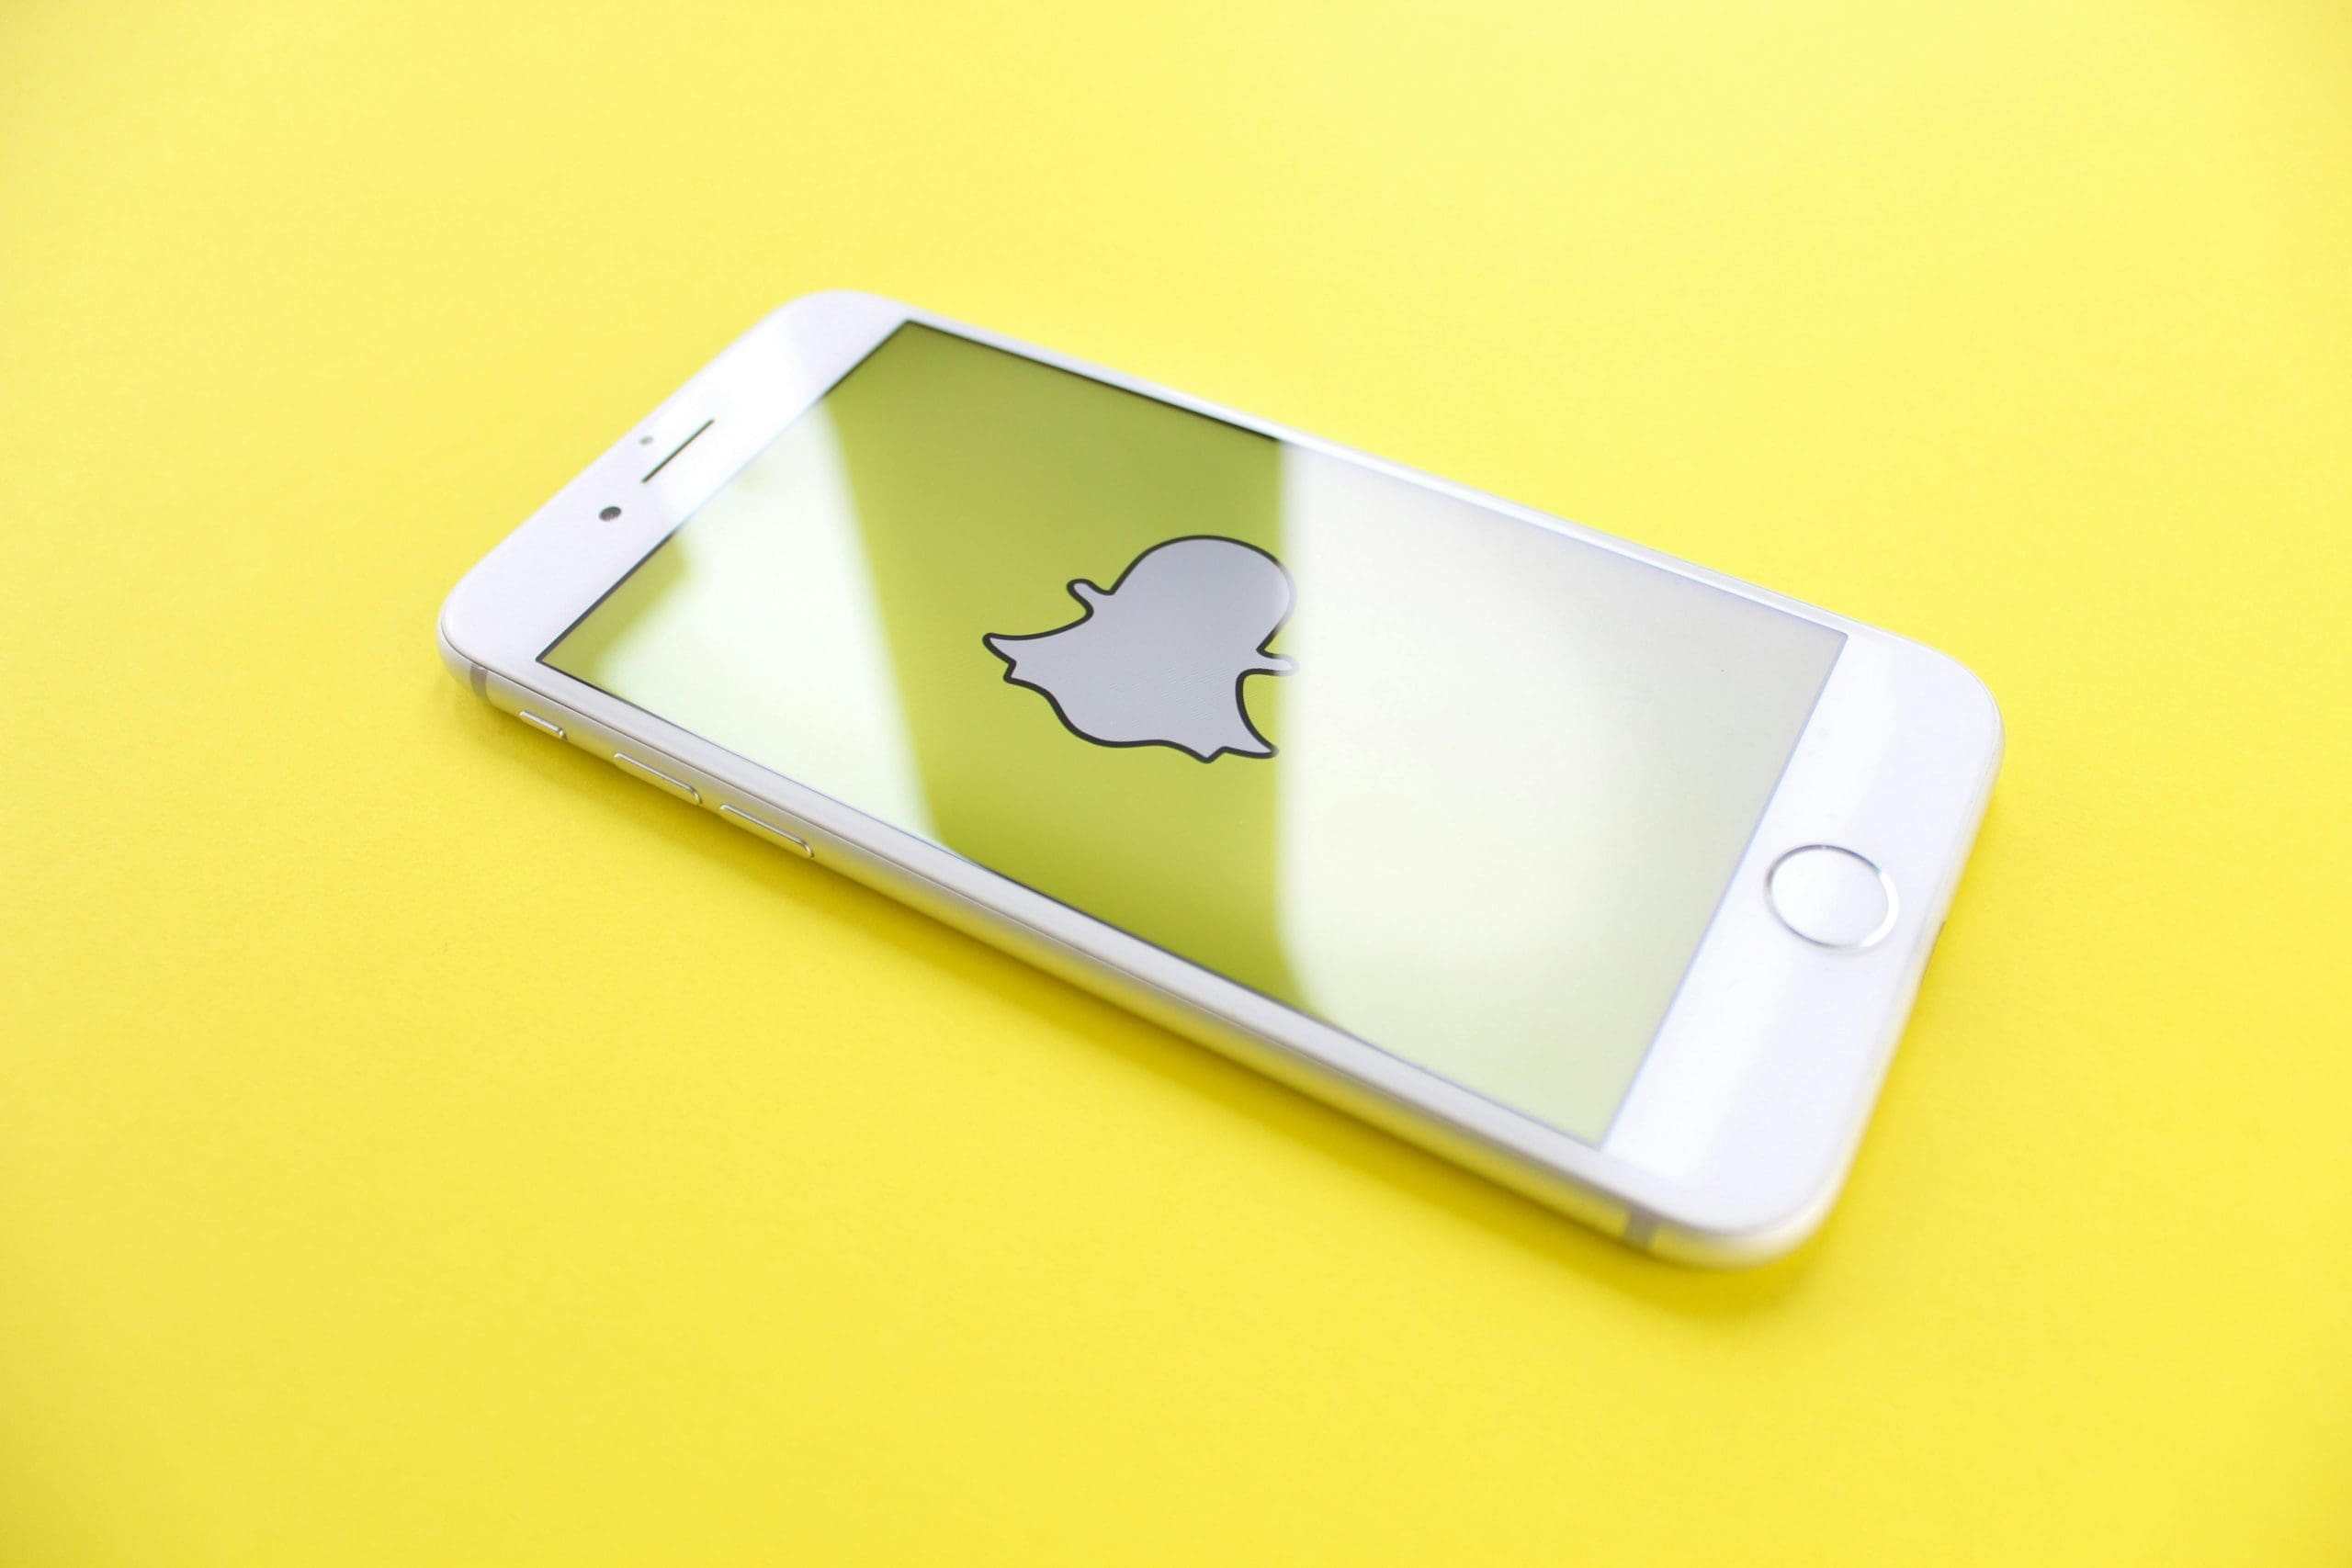 snapchat ads logo on phone